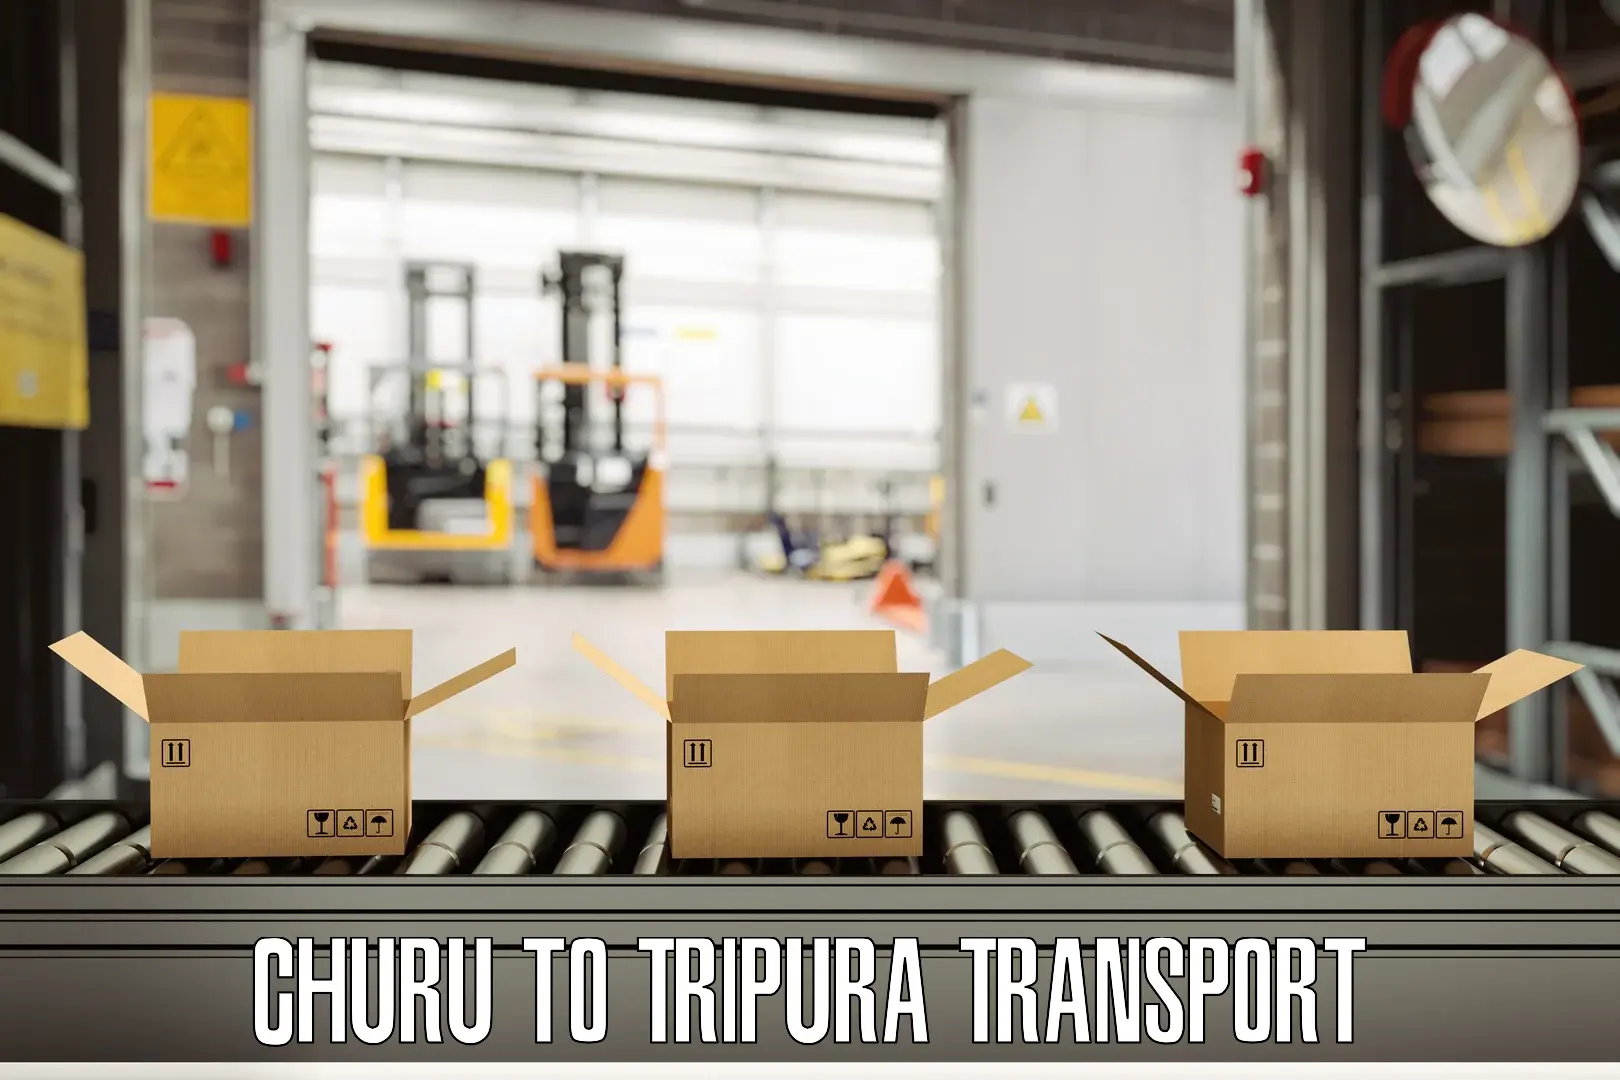 Online transport booking Churu to Dhalai